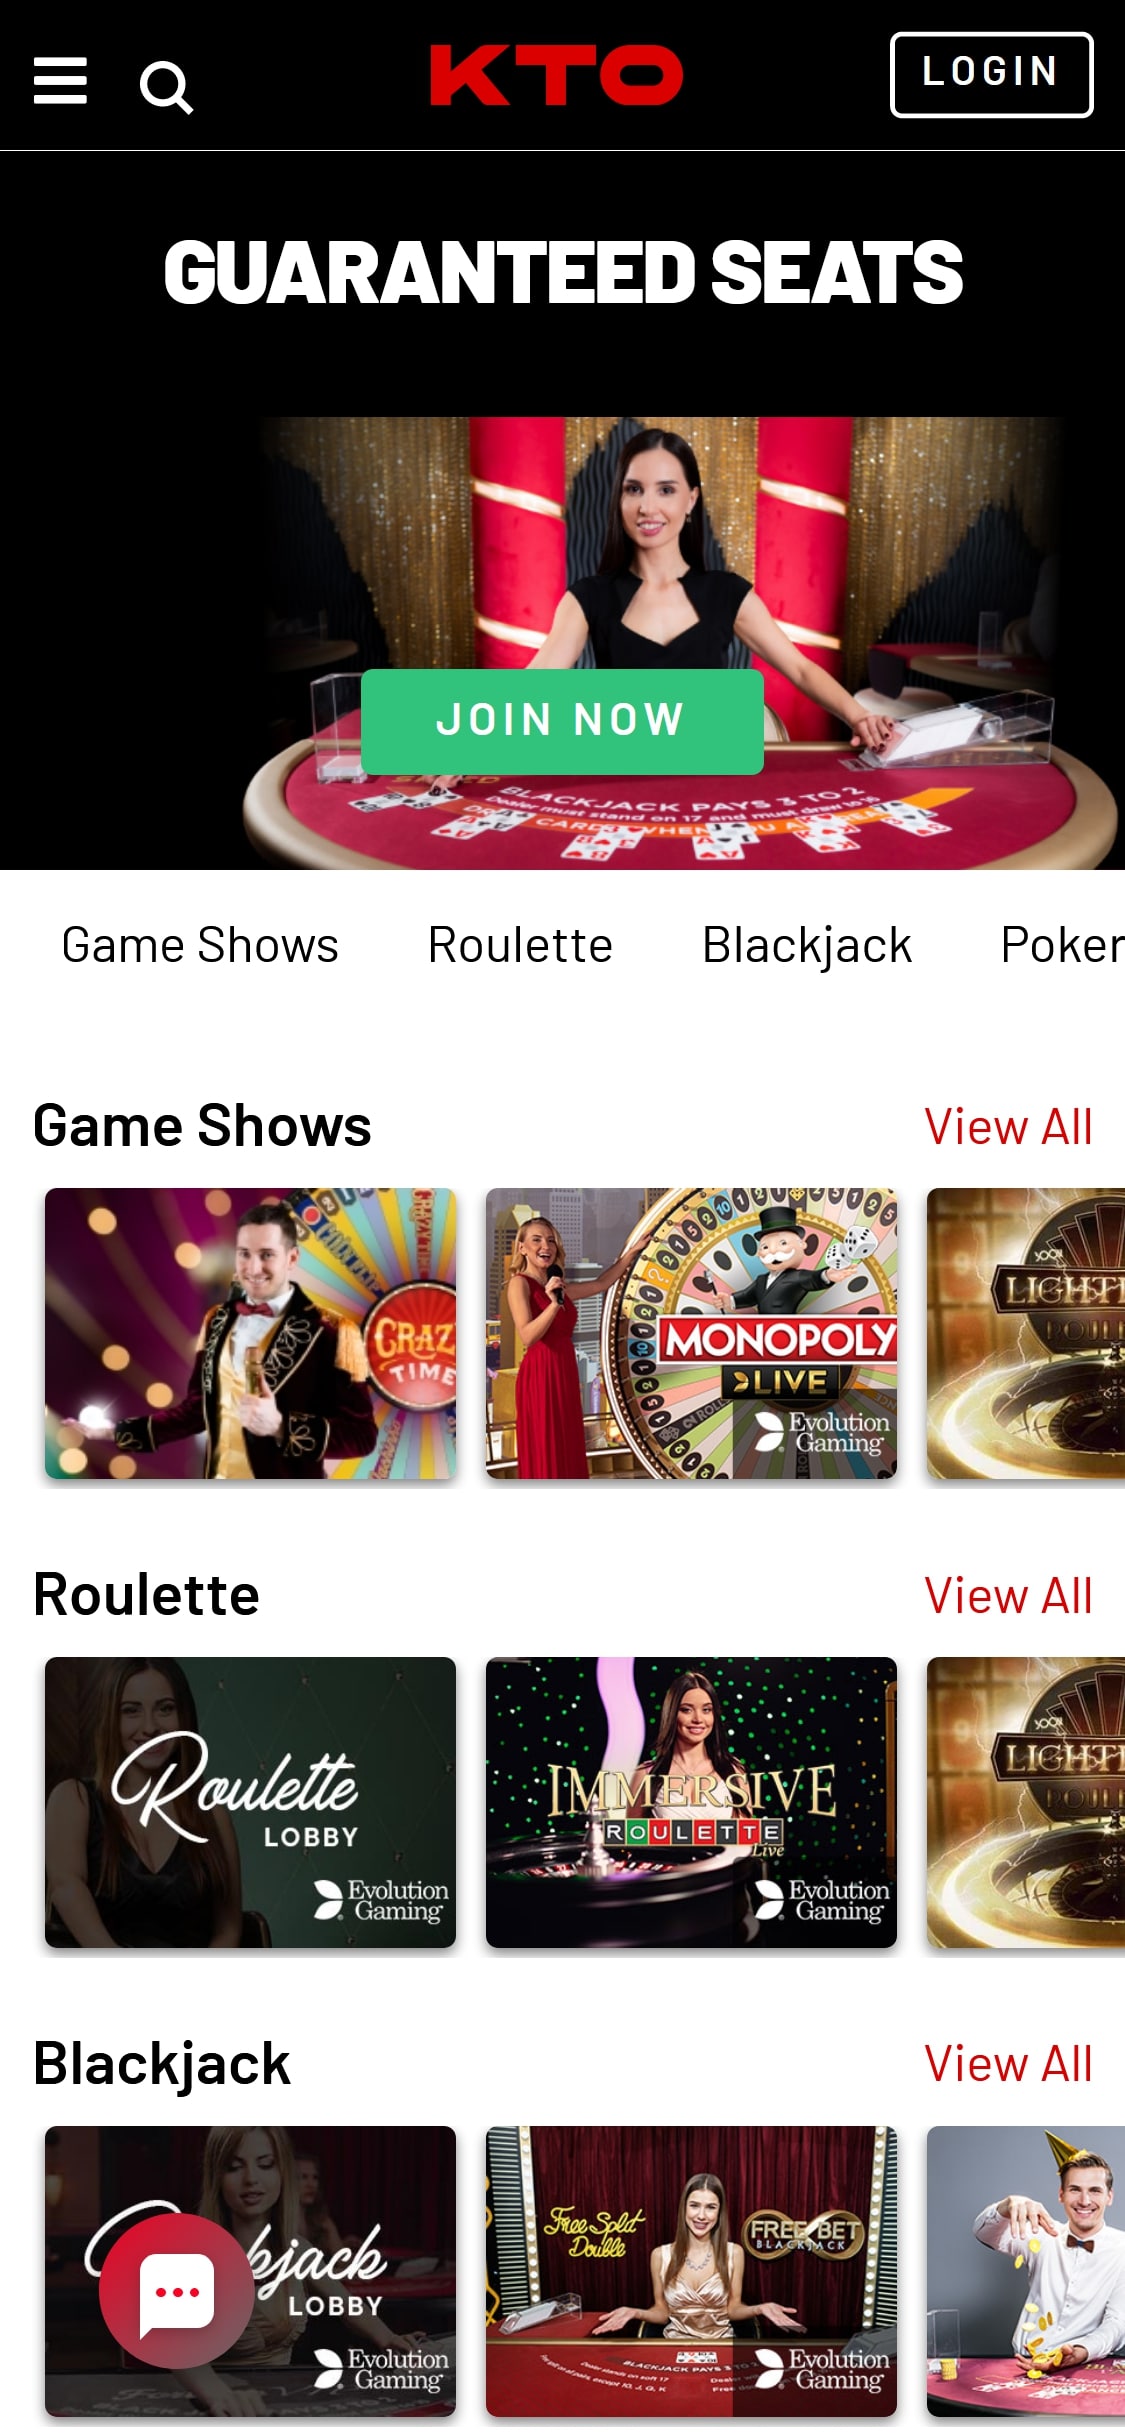 KTO Casino Mobile Live Dealer Games Review